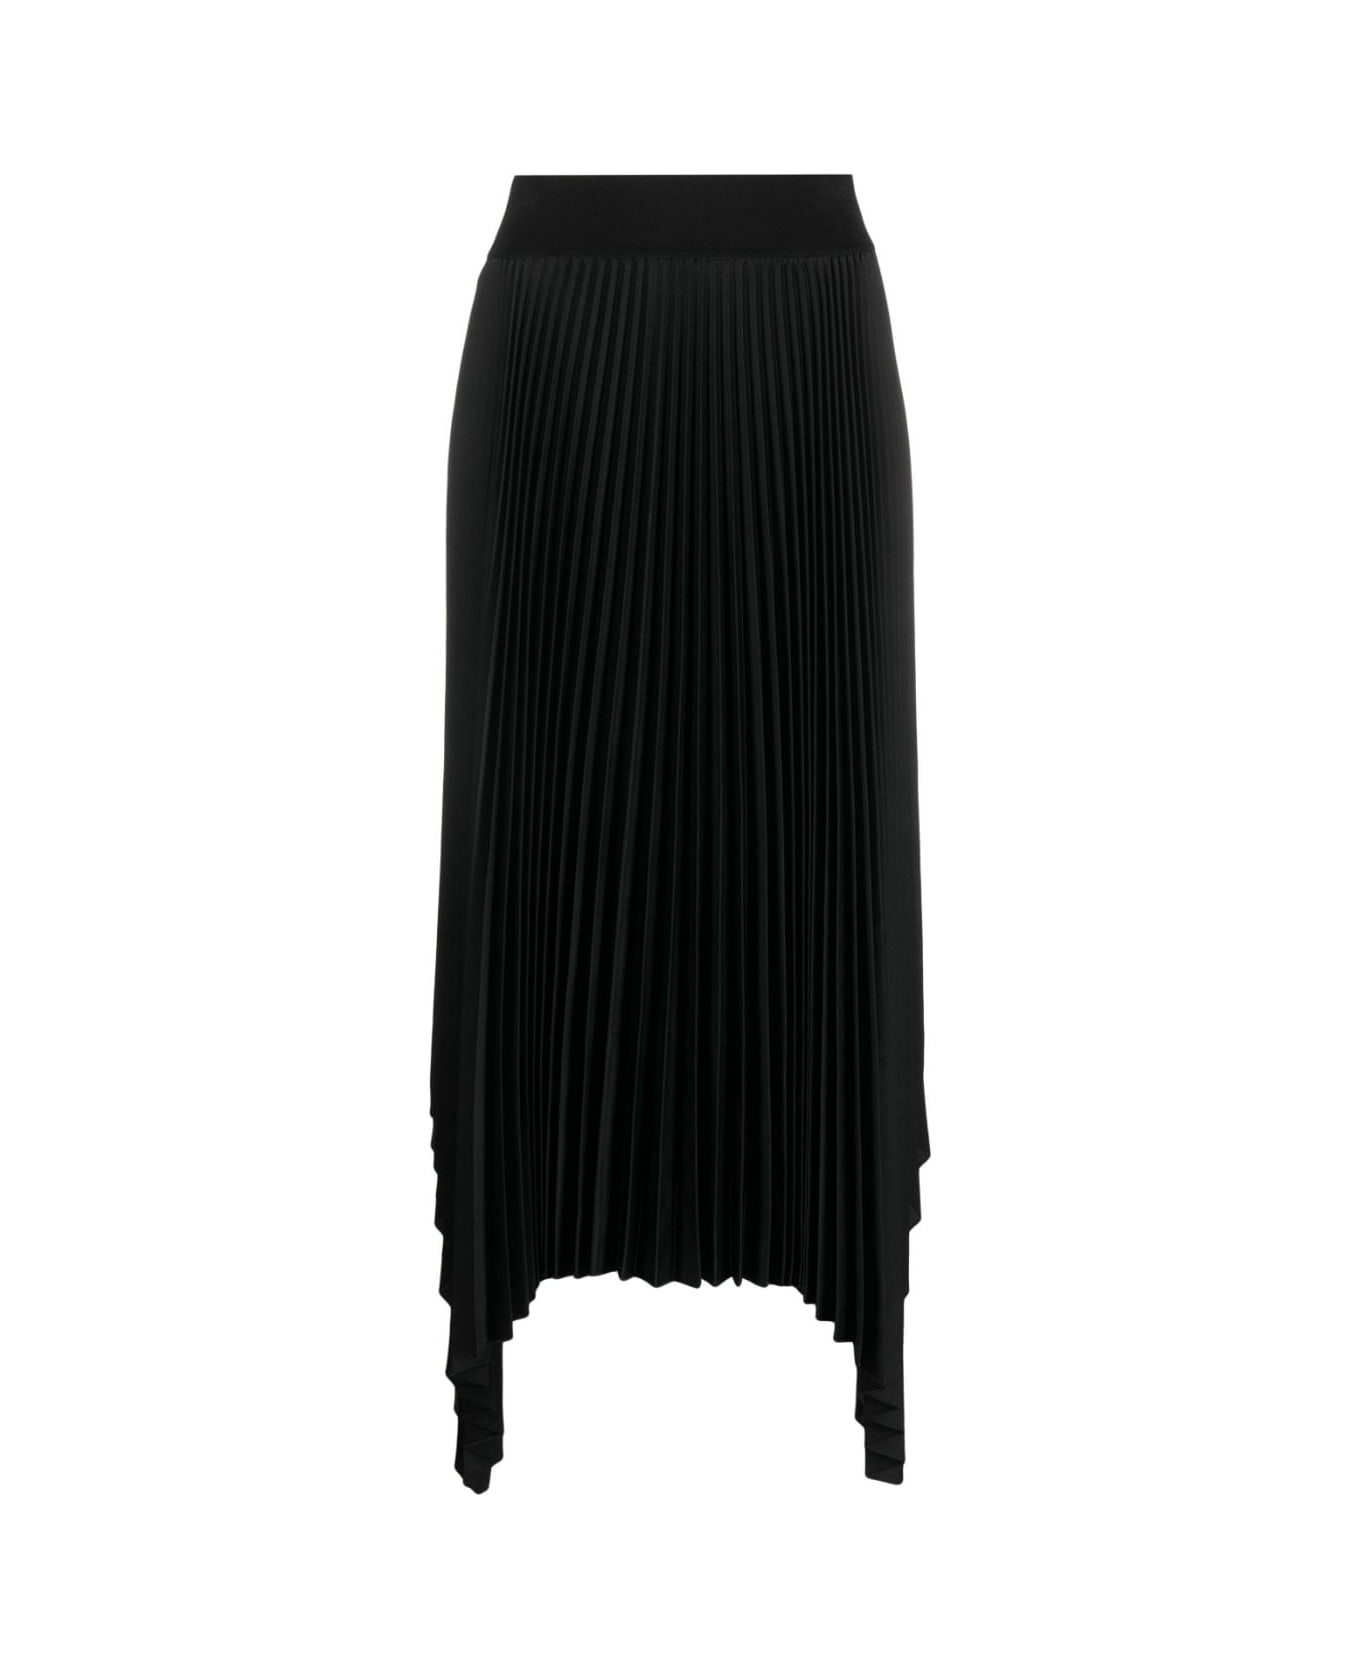 Joseph Ade Skirt Knit Weave Plisse - Black スカート